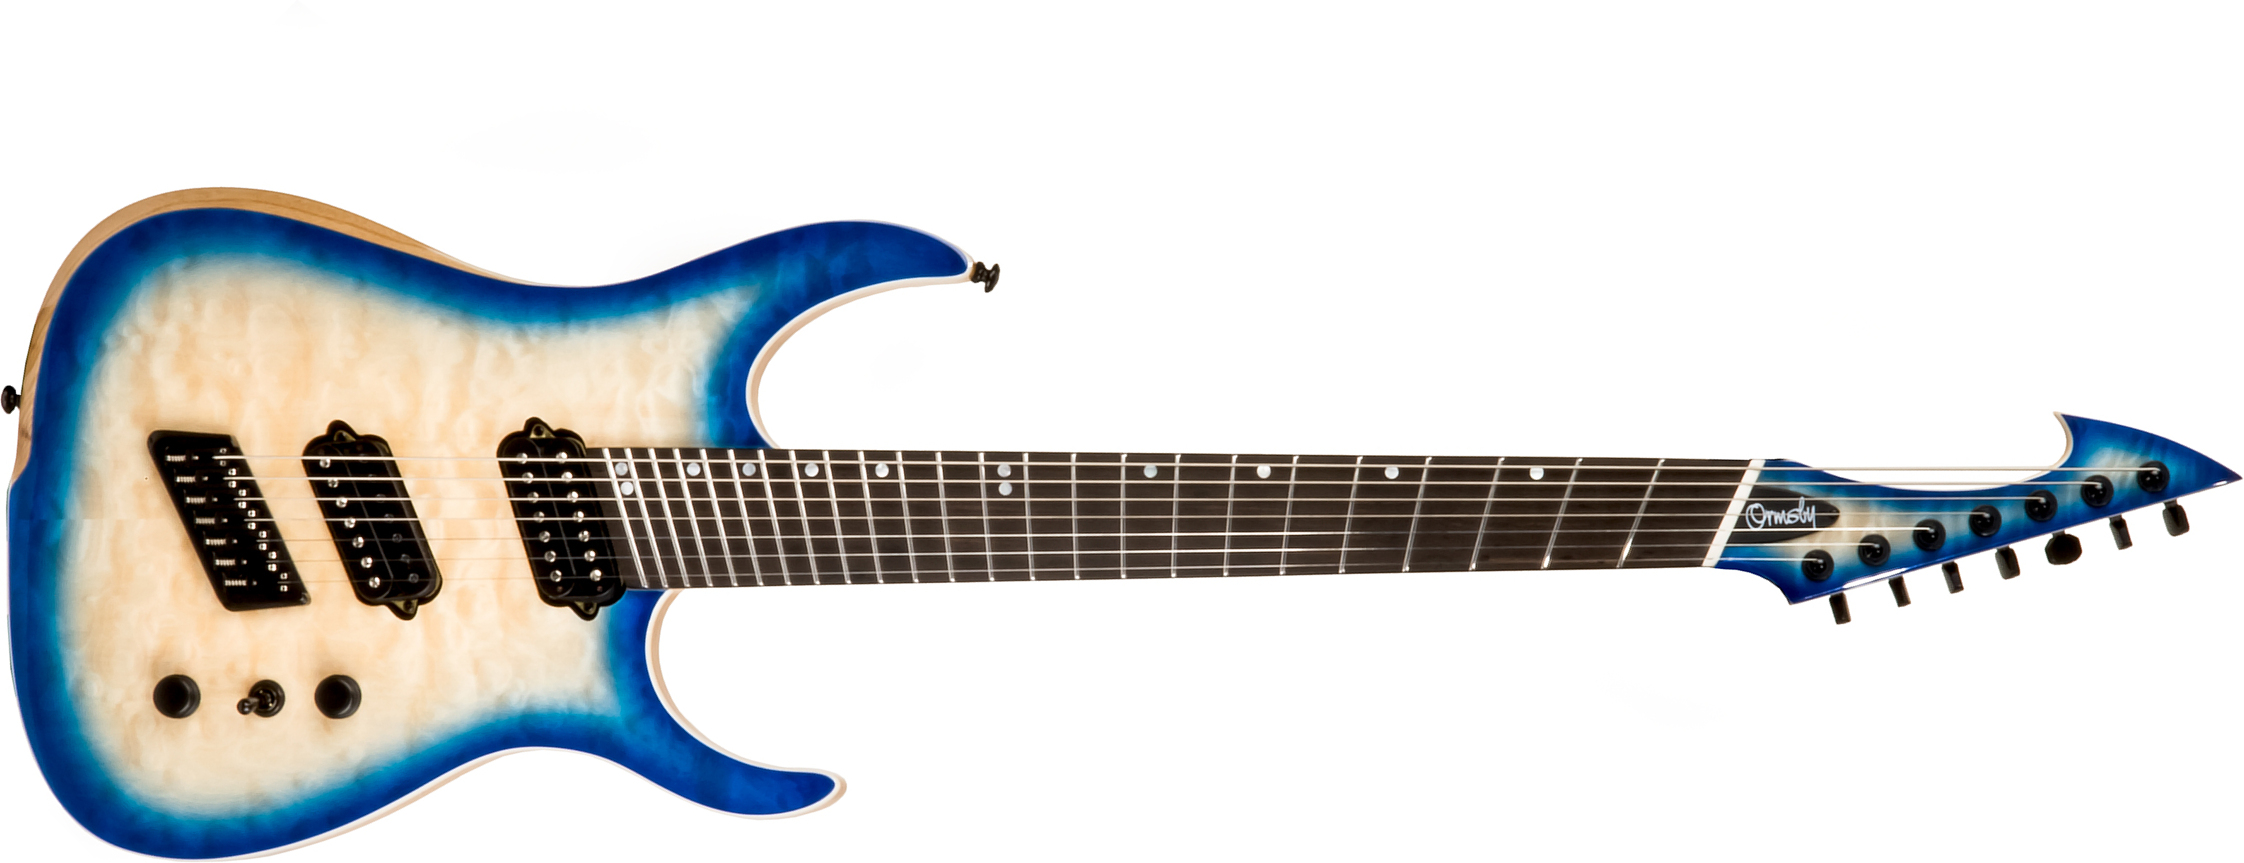 Ormsby Tx Gtr 7 Swamp Ash Quilt Maple Hh Ht Eb - Azzurro Blue - Guitare Électrique Multi-scale - Main picture